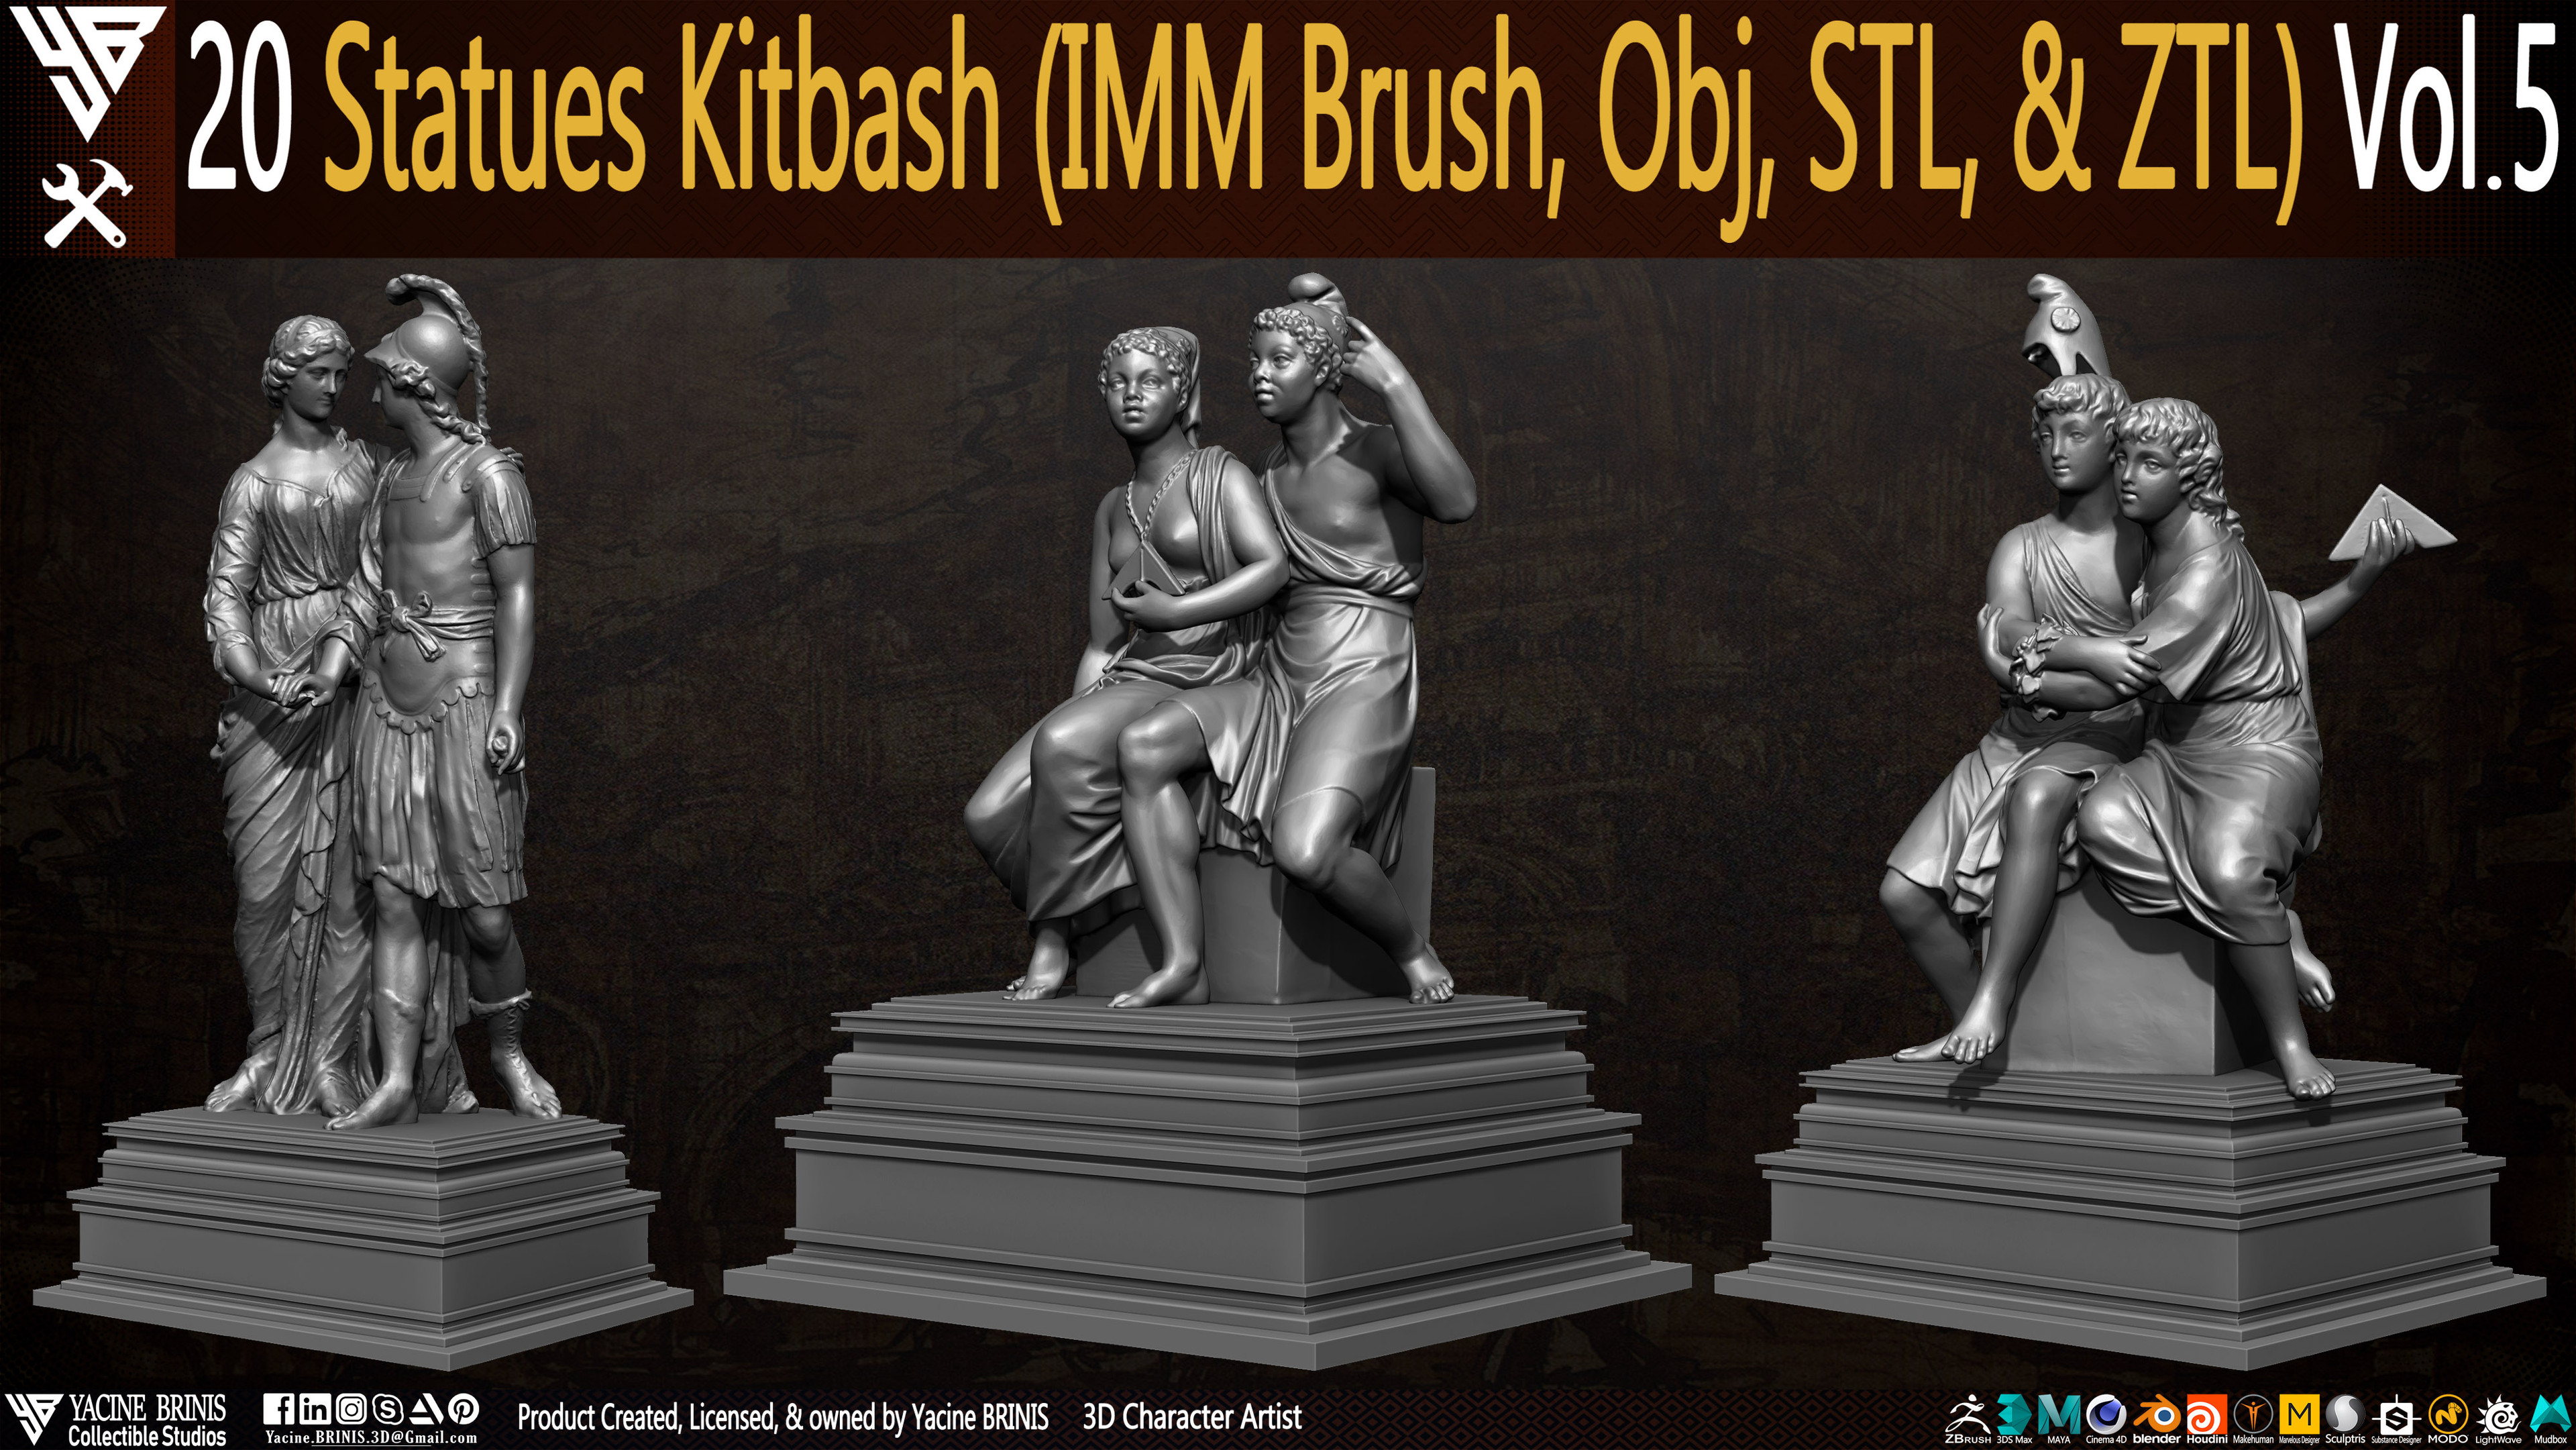 Statues Kitbash by yacine brinis Set 23